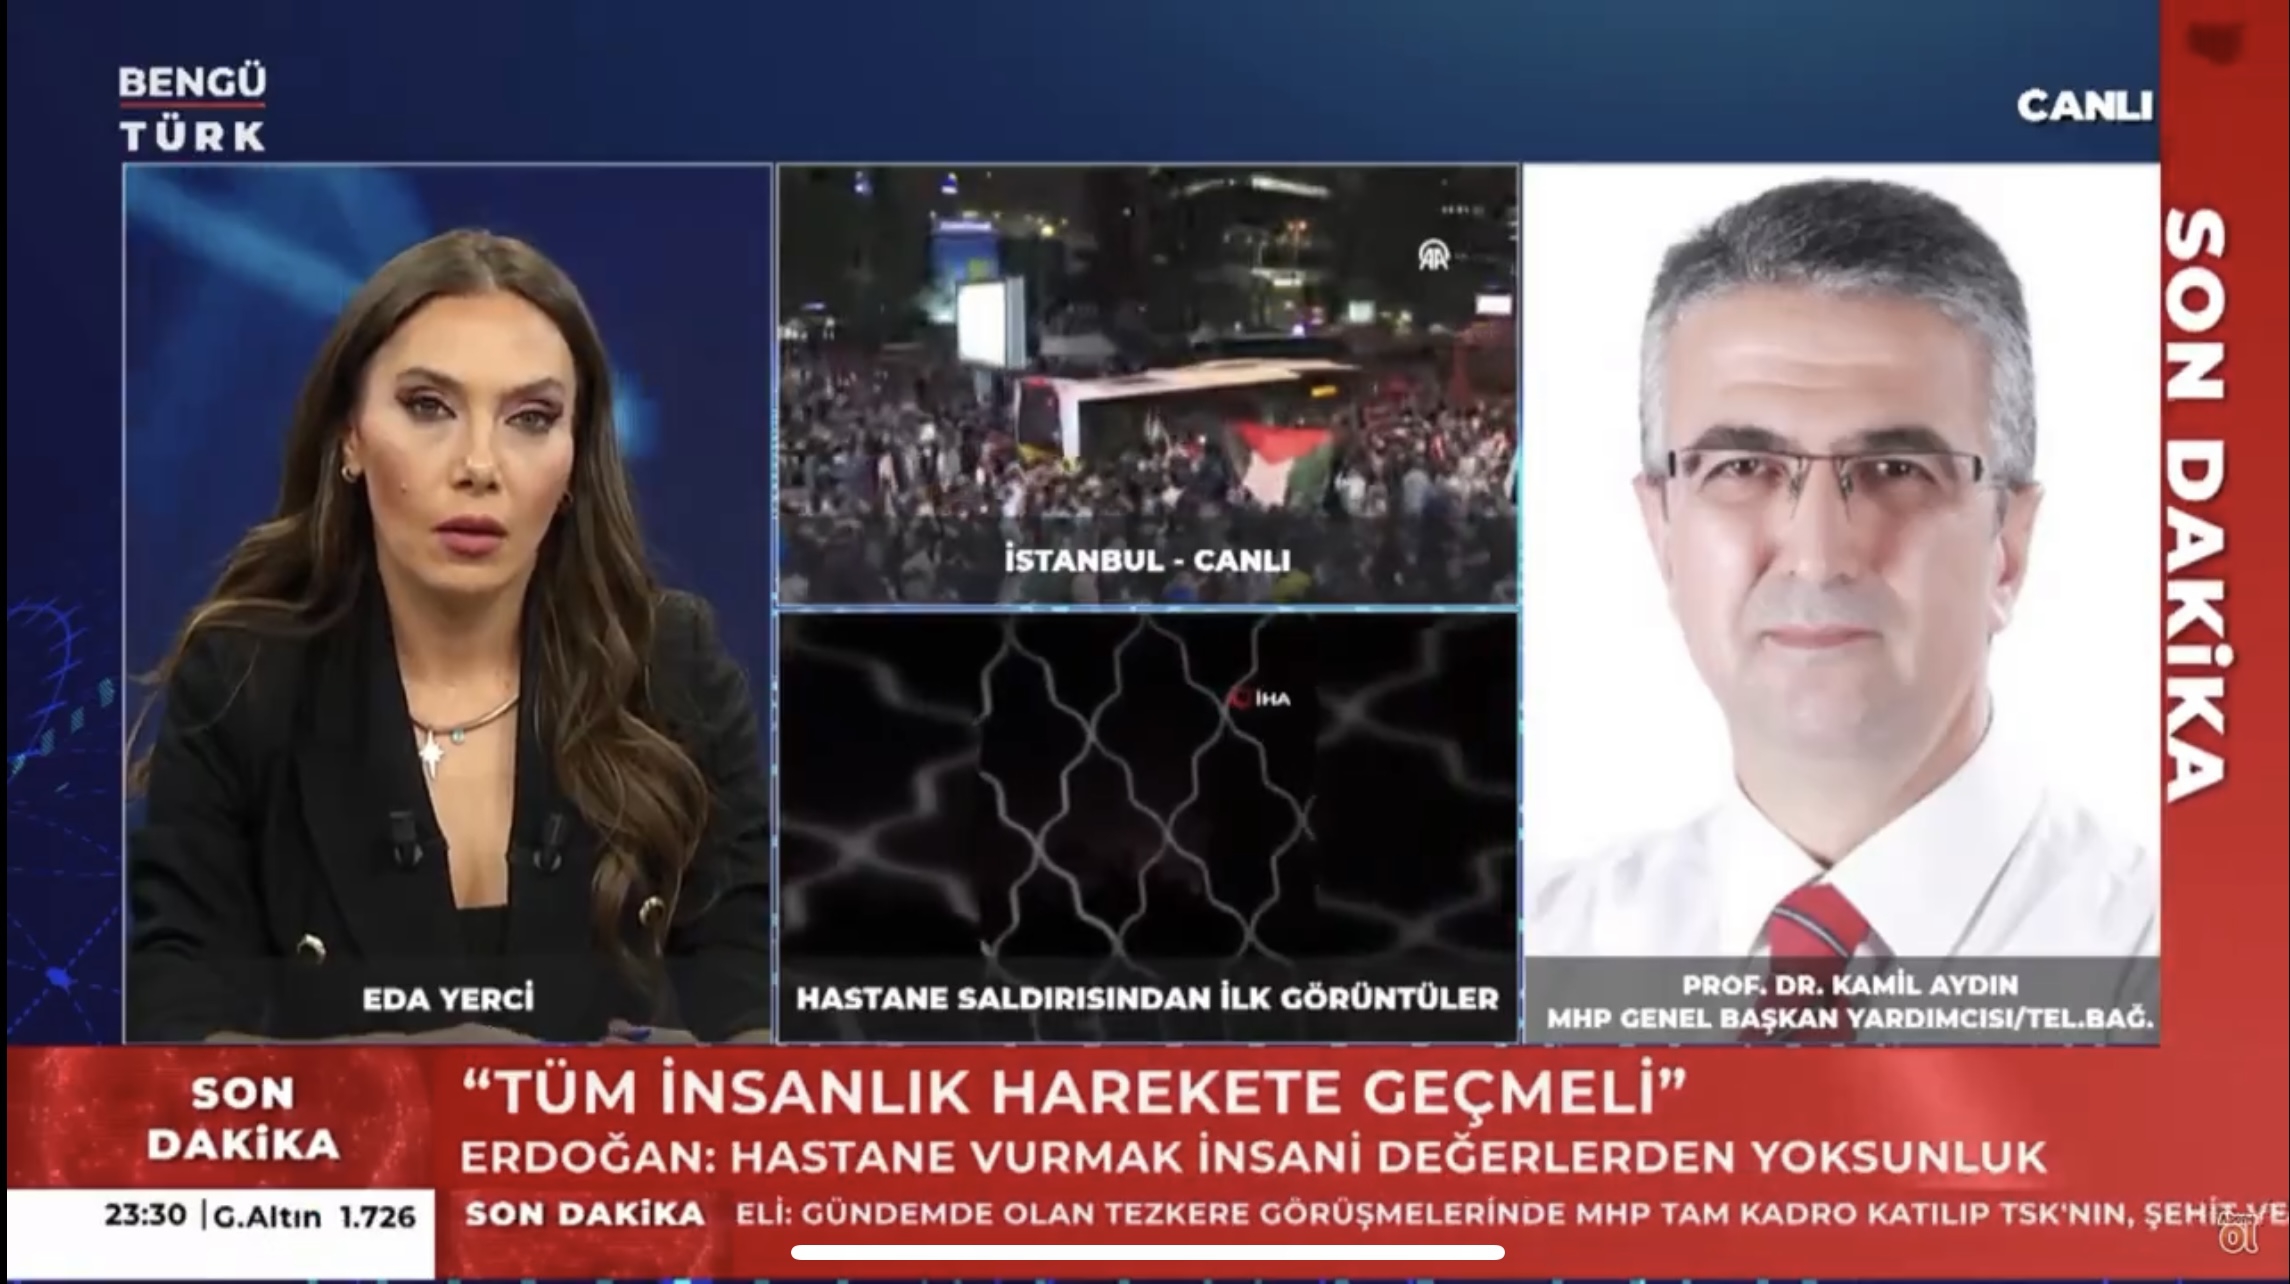 Bengü Türk TV’de duygusal anlar 